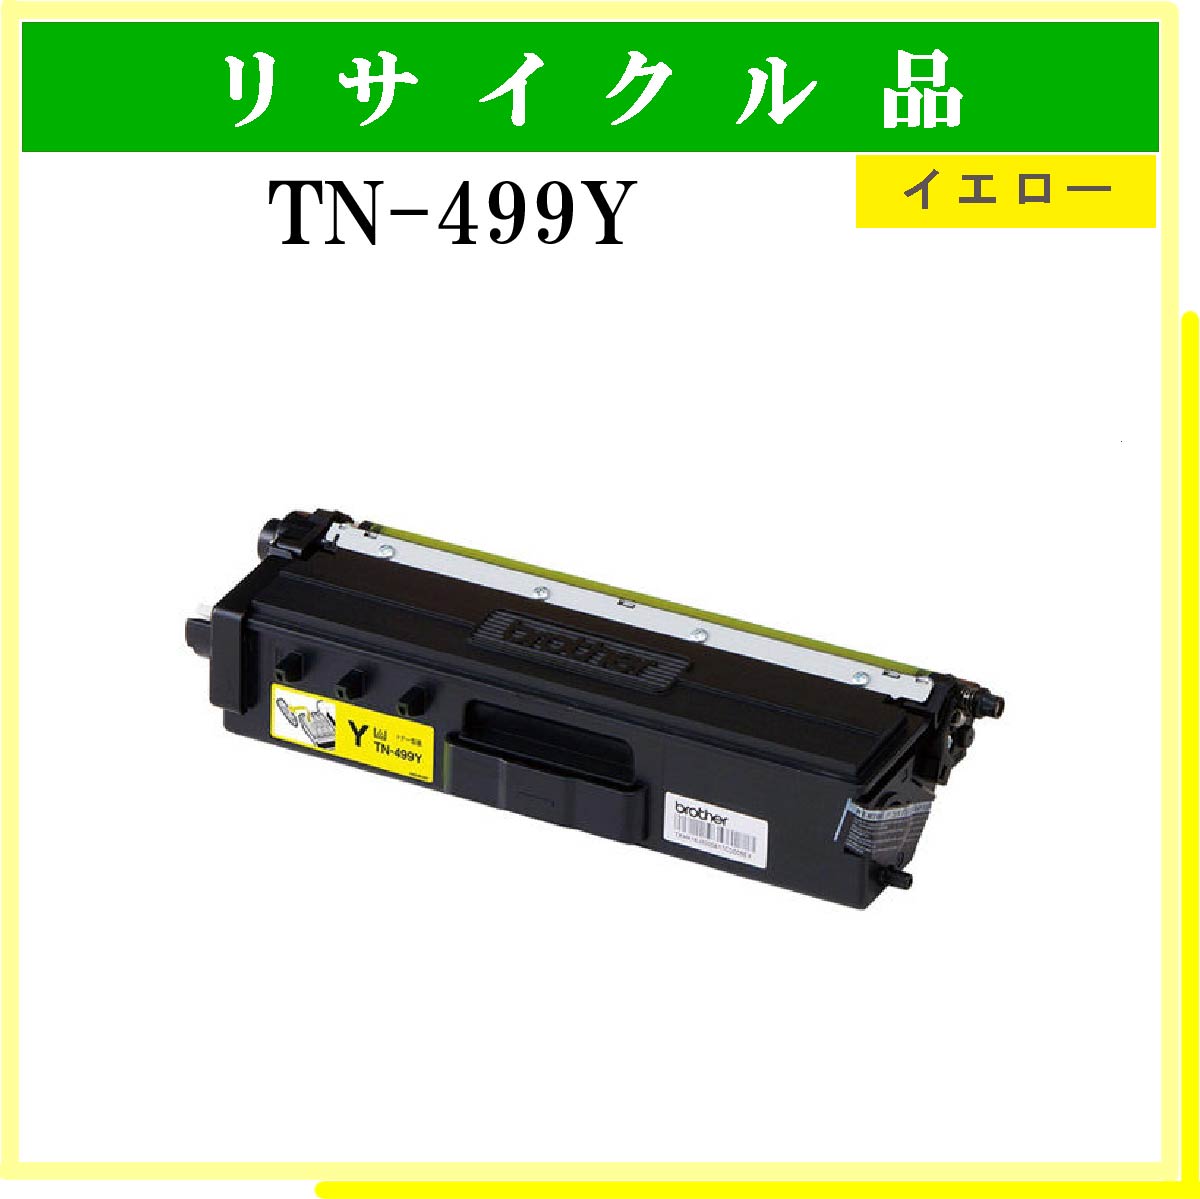 TN-499Y